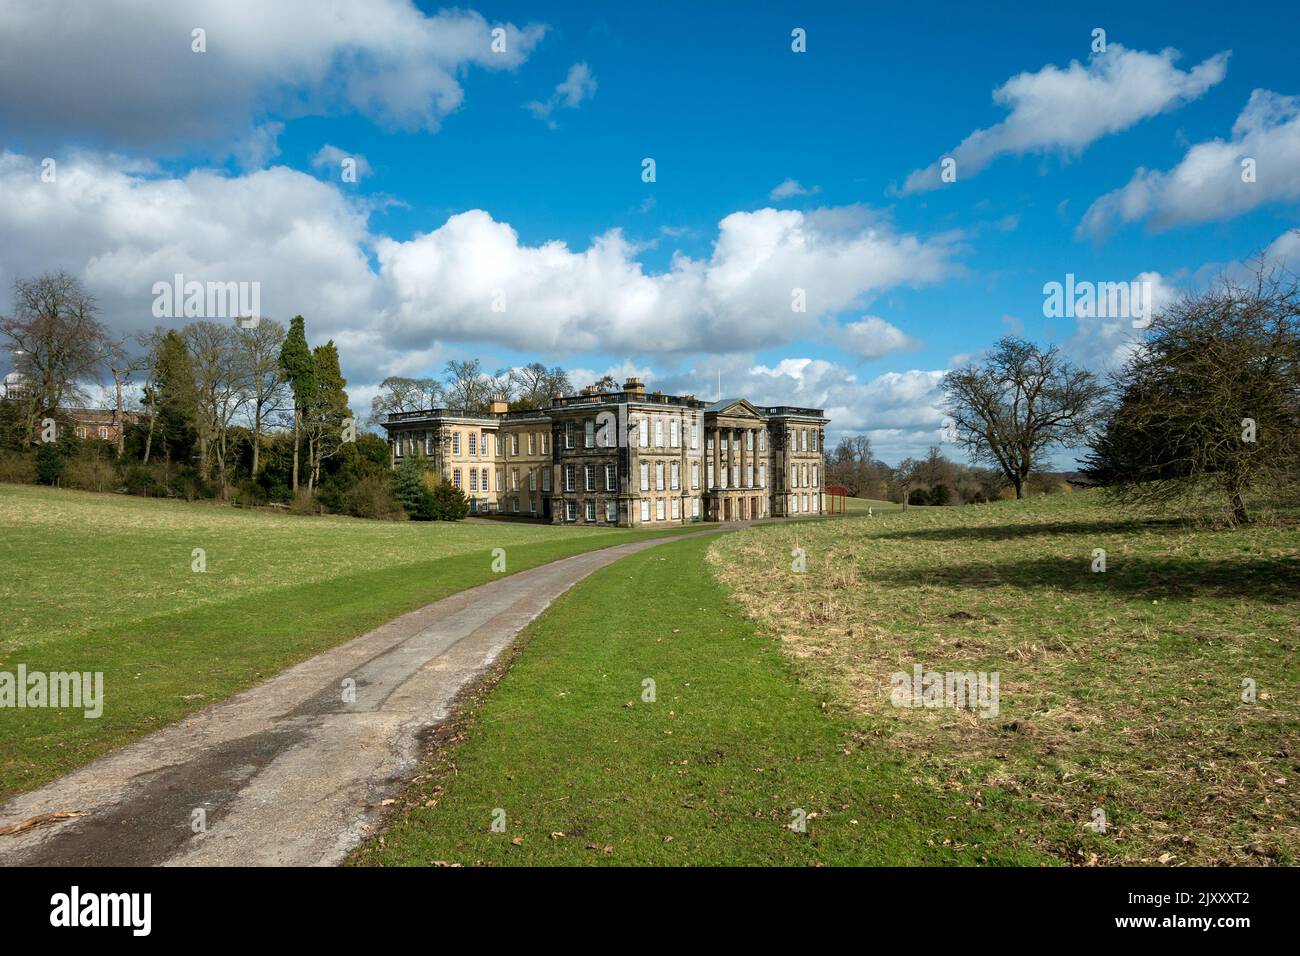 Calke Abbey English stately home, Ticknall, Derbyshire, England, UK Stock Photo